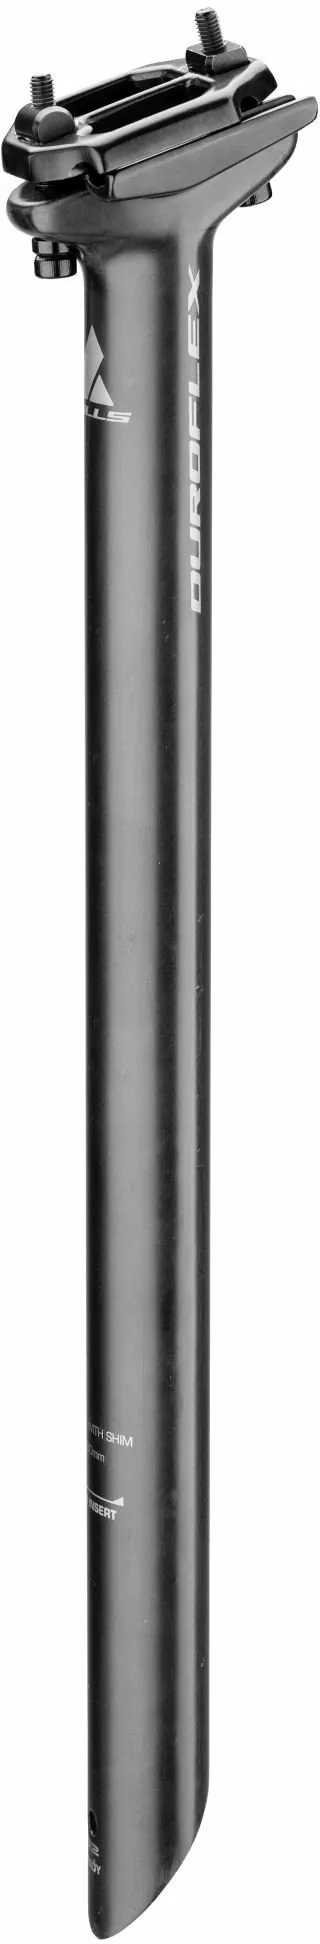 Reggisella BULLS Duroflex (31,6 mm) carbonio